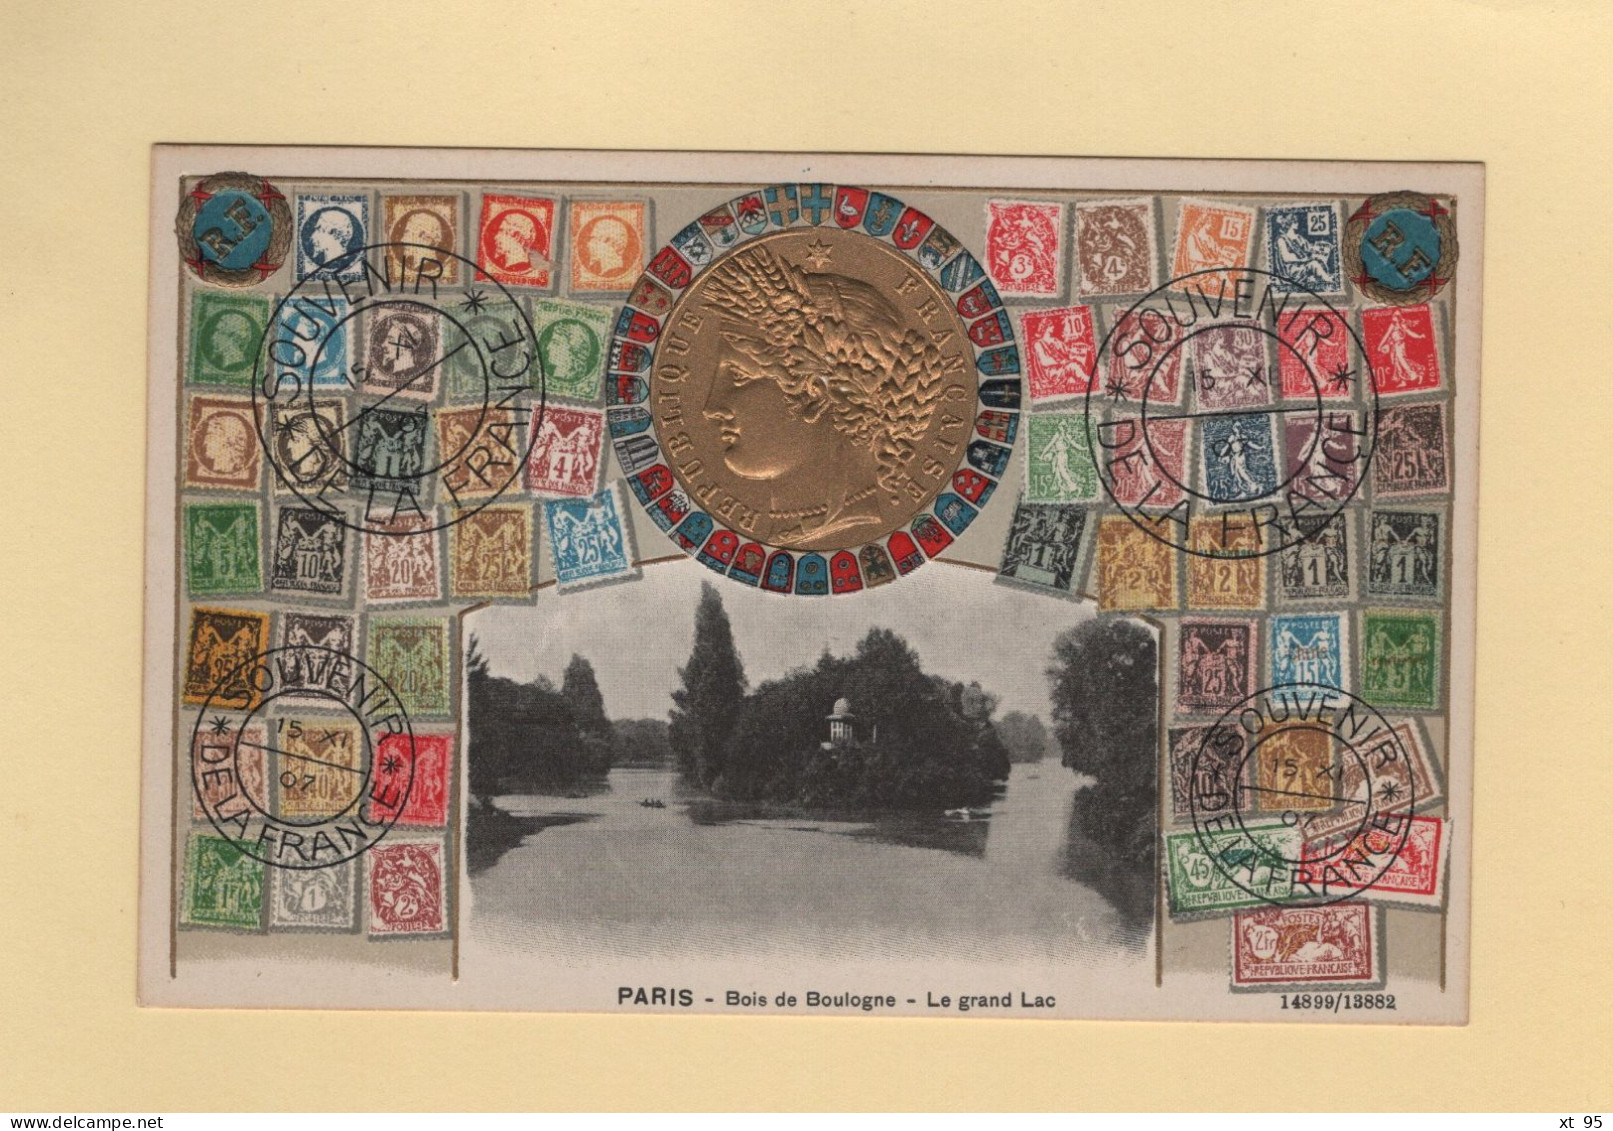 Timbres - Souvenir De La France - Paris - Bois De Boulogne Le Grand Lac - Carte Gauffree - Stamps (pictures)